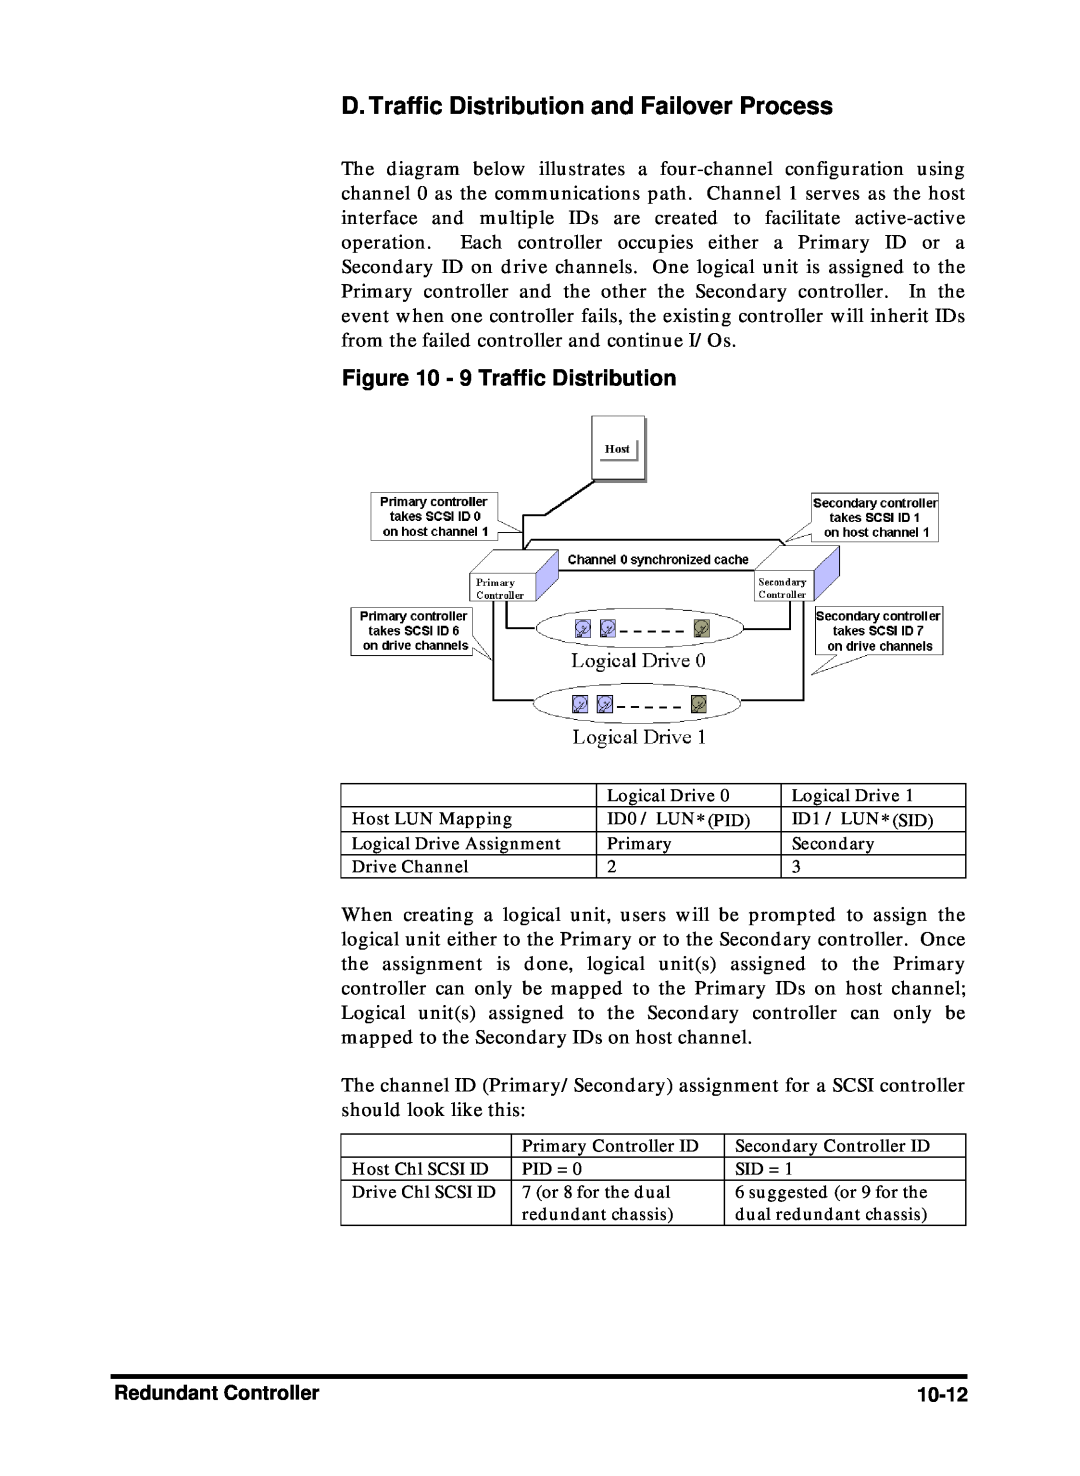 Compaq Infortrend manual D. Traffic Distribution and Failover Process, 9 Traffic Distribution 